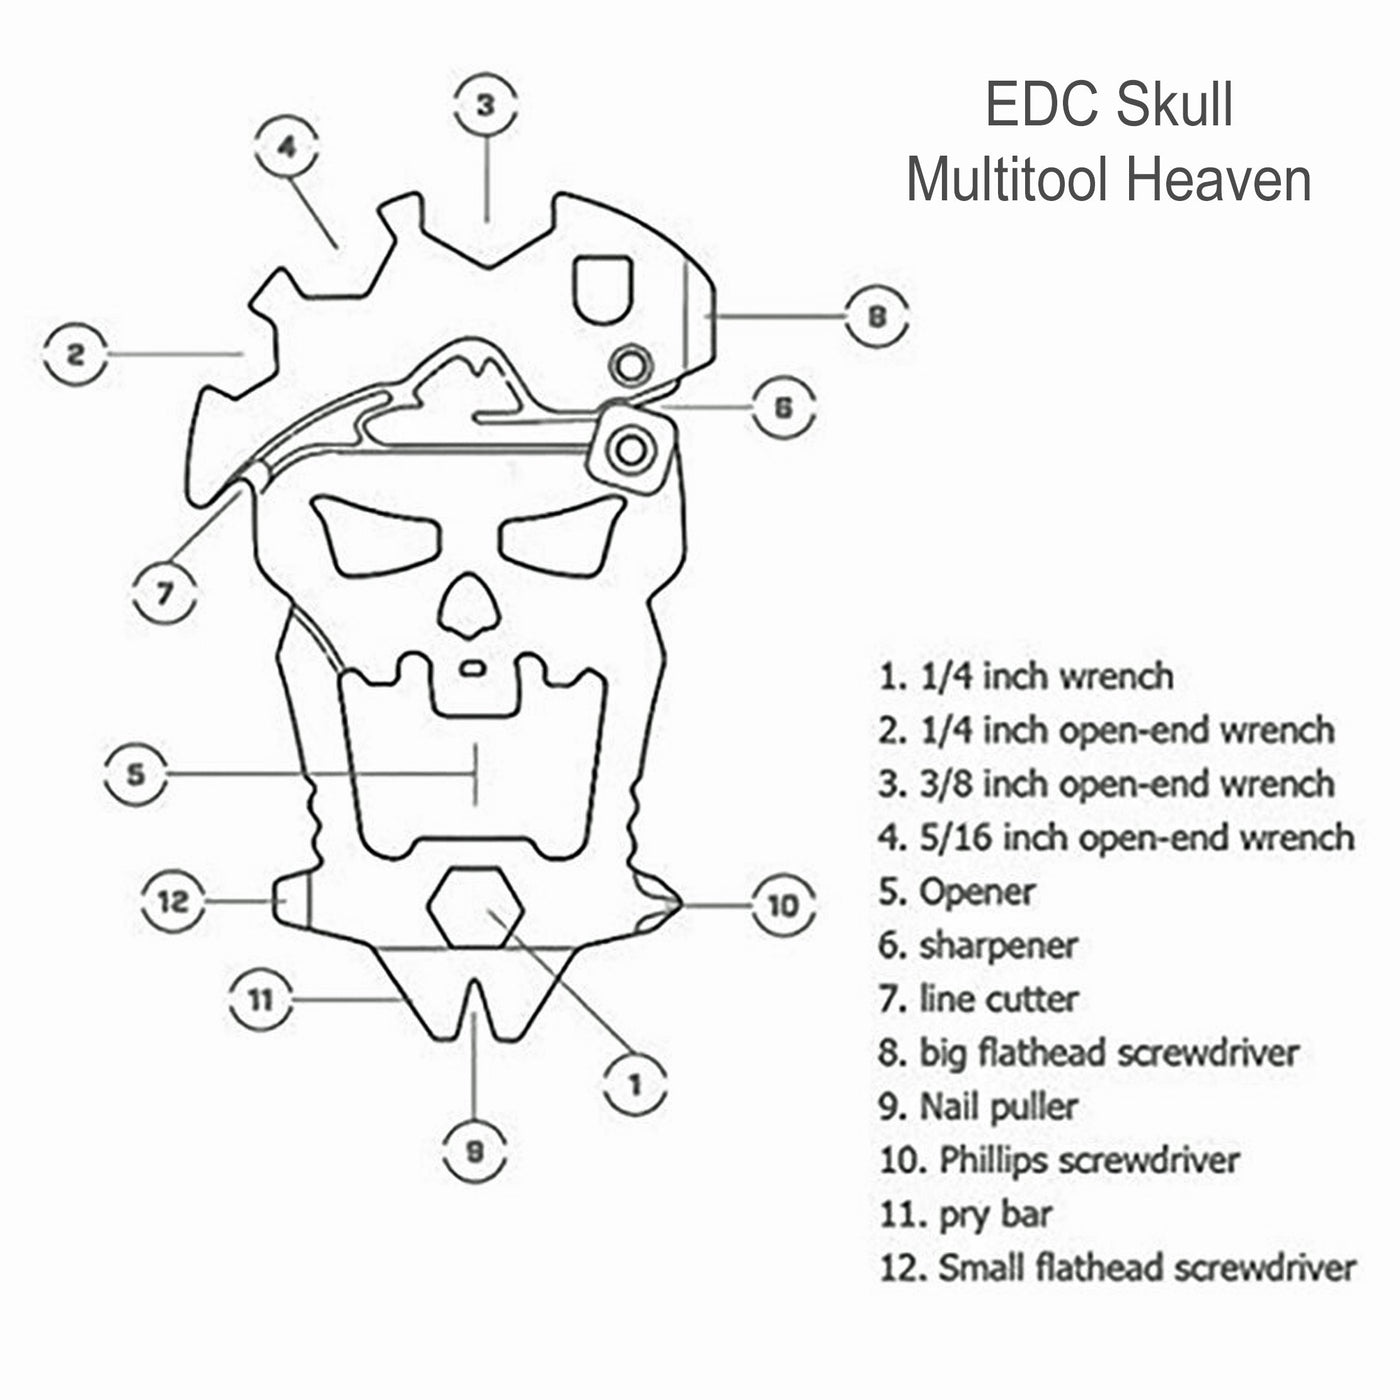 EDC Skull Multitool